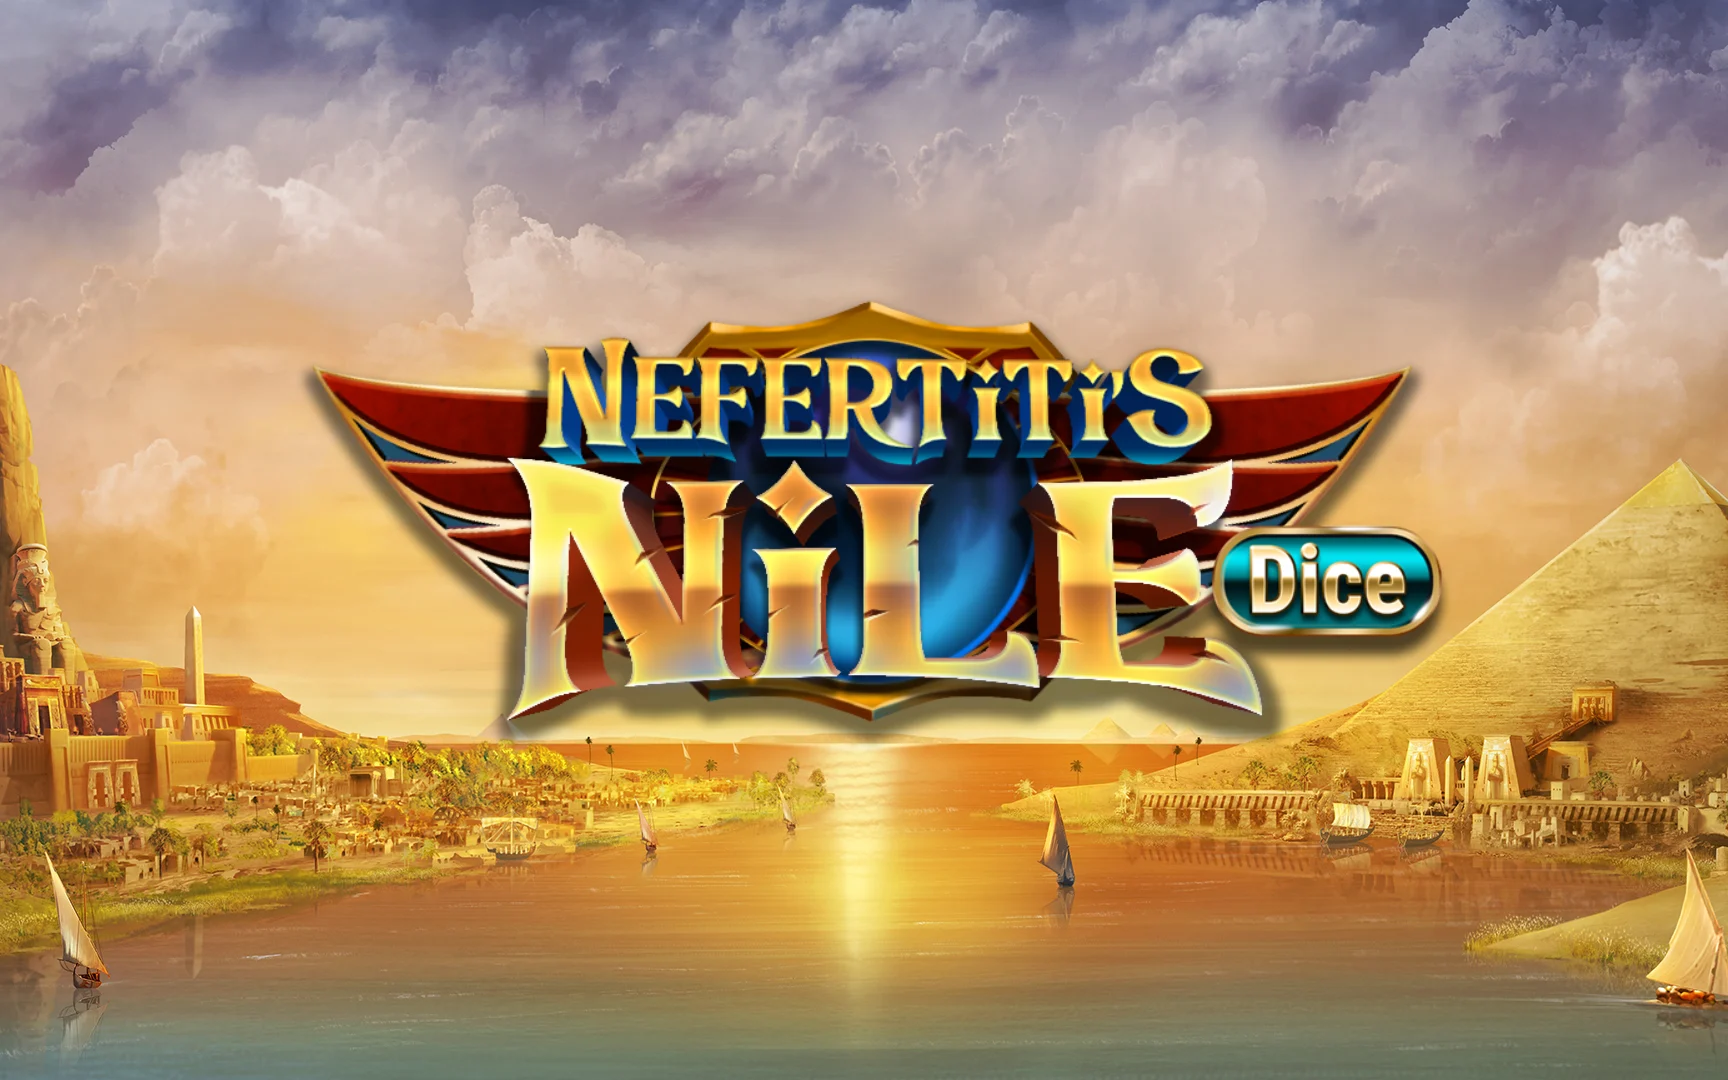 Zagraj w Nefertiti's Nile Dice w kasynie online Starcasino.be